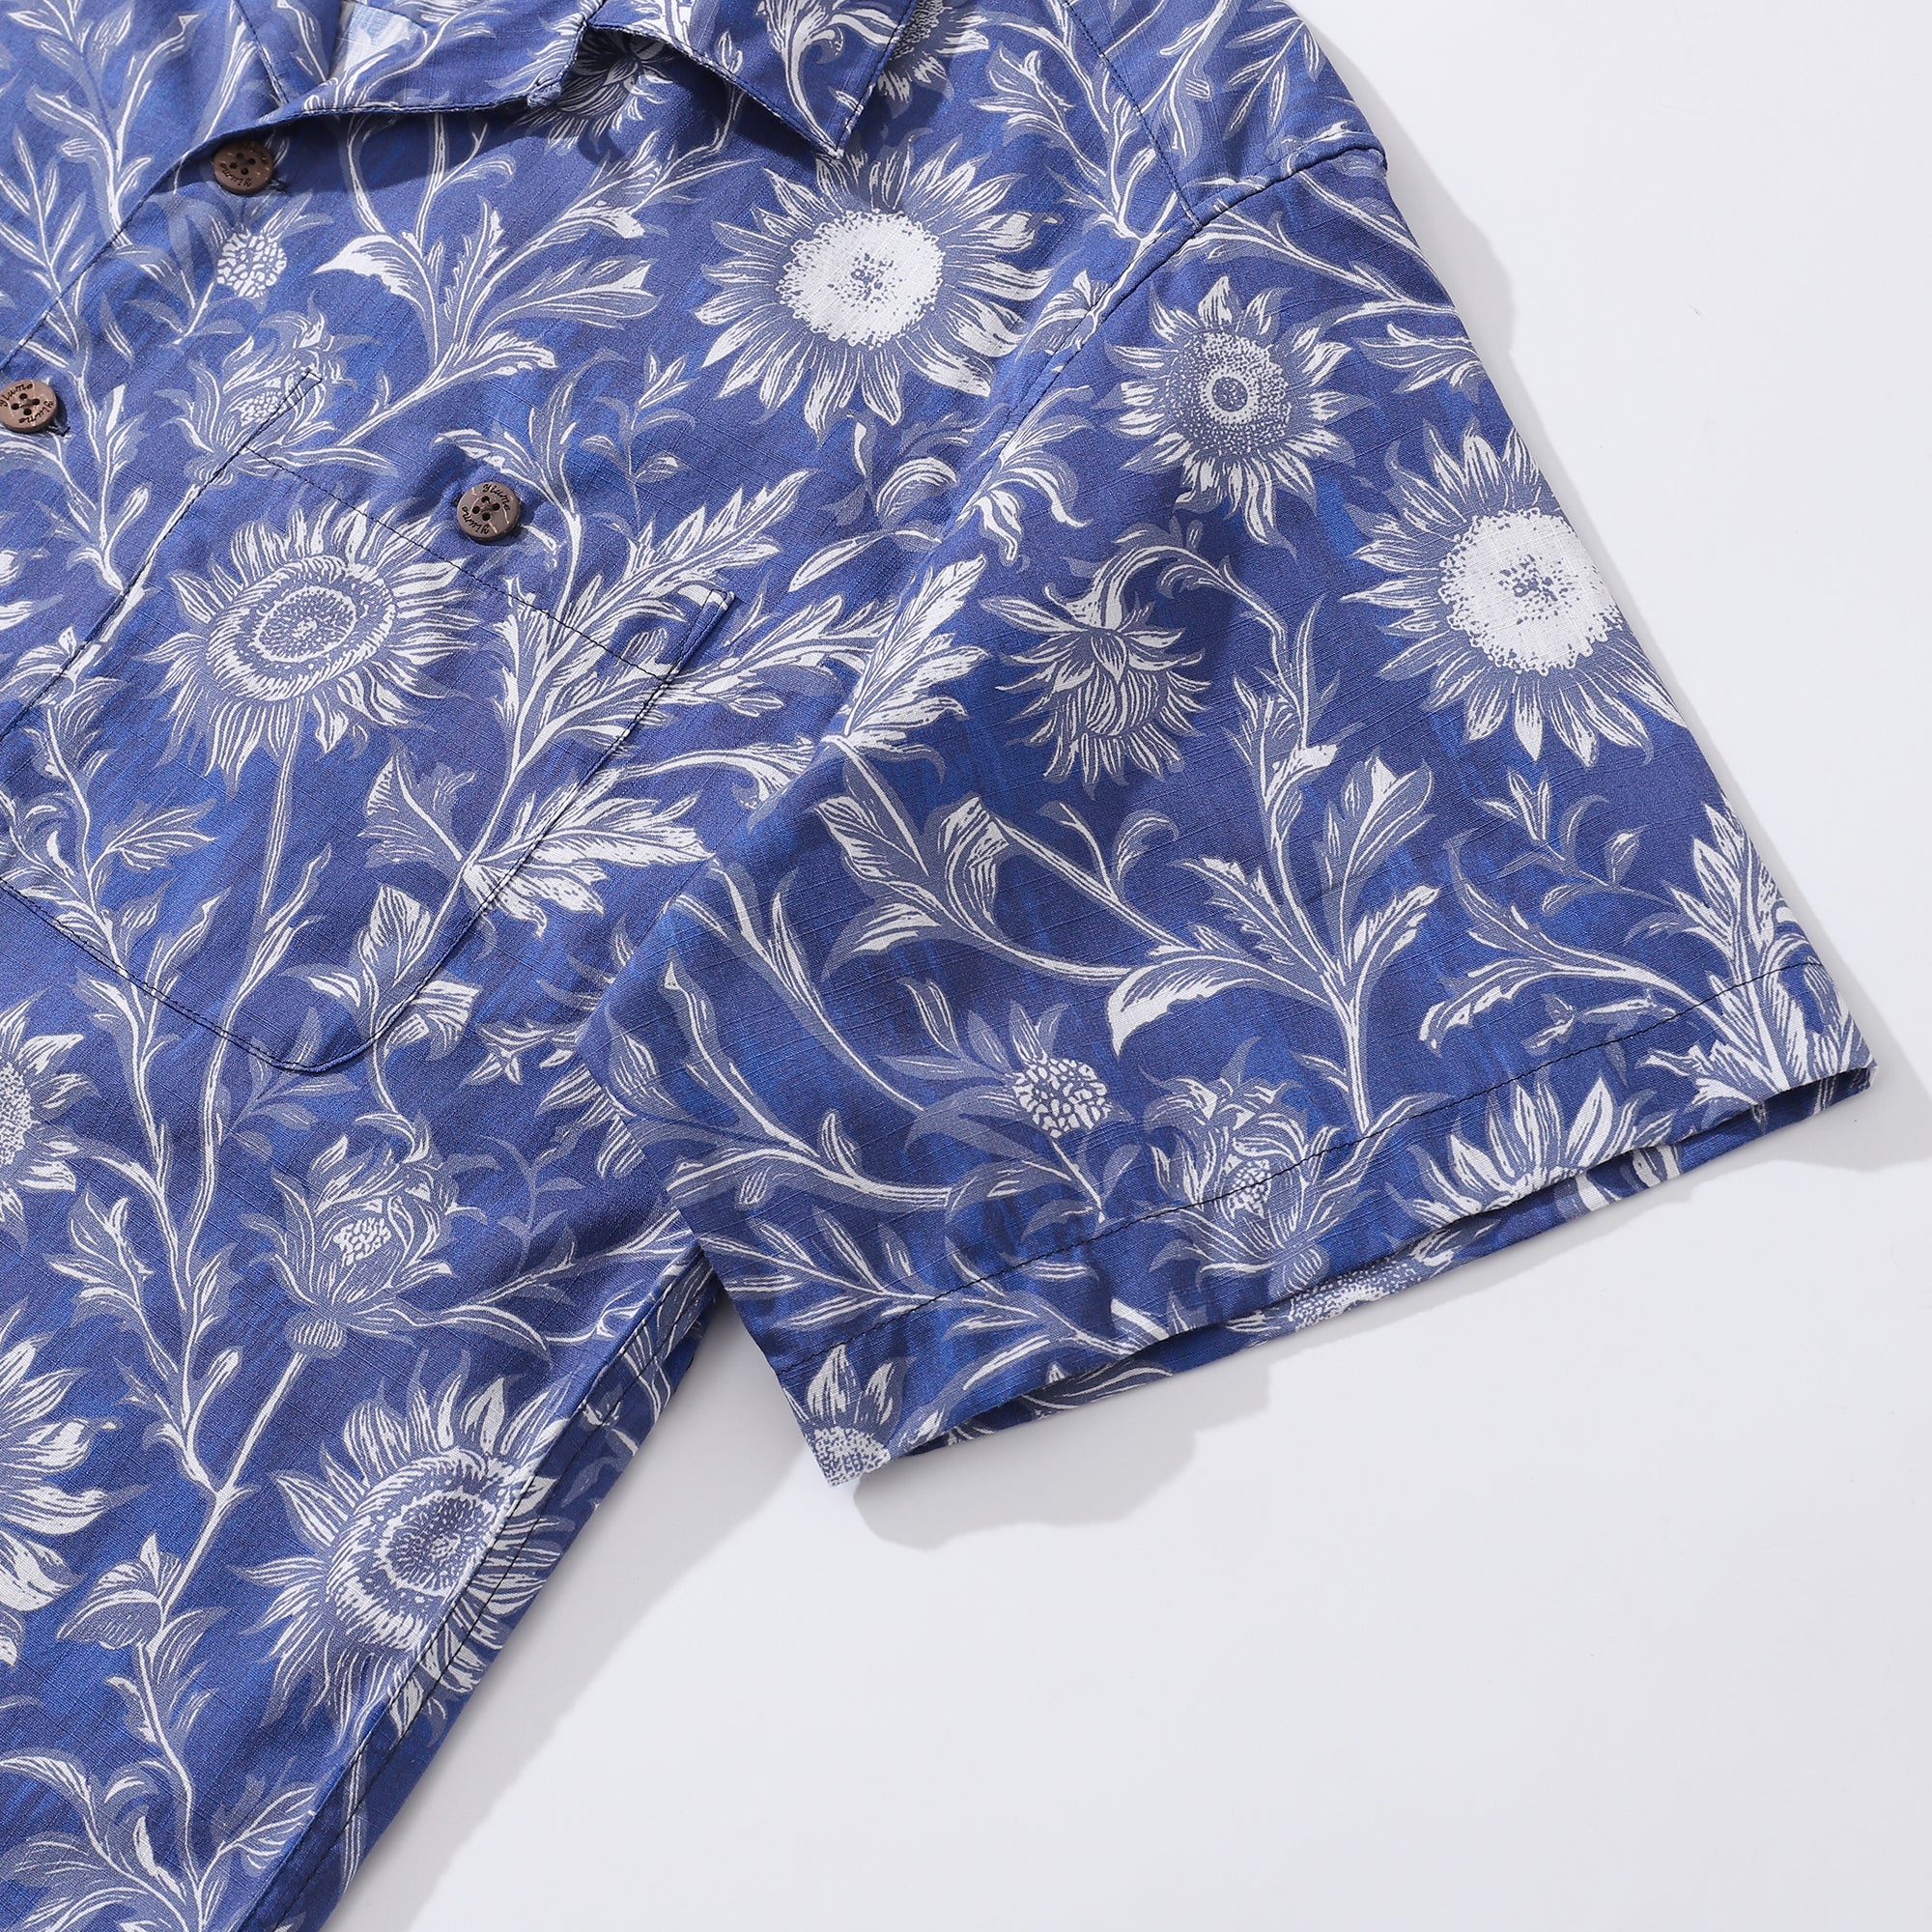 Hawaiian Shirt For Men Blue and White Porcelain Sunflower Camp collar Short Sleeve 100% Cotton Shirt